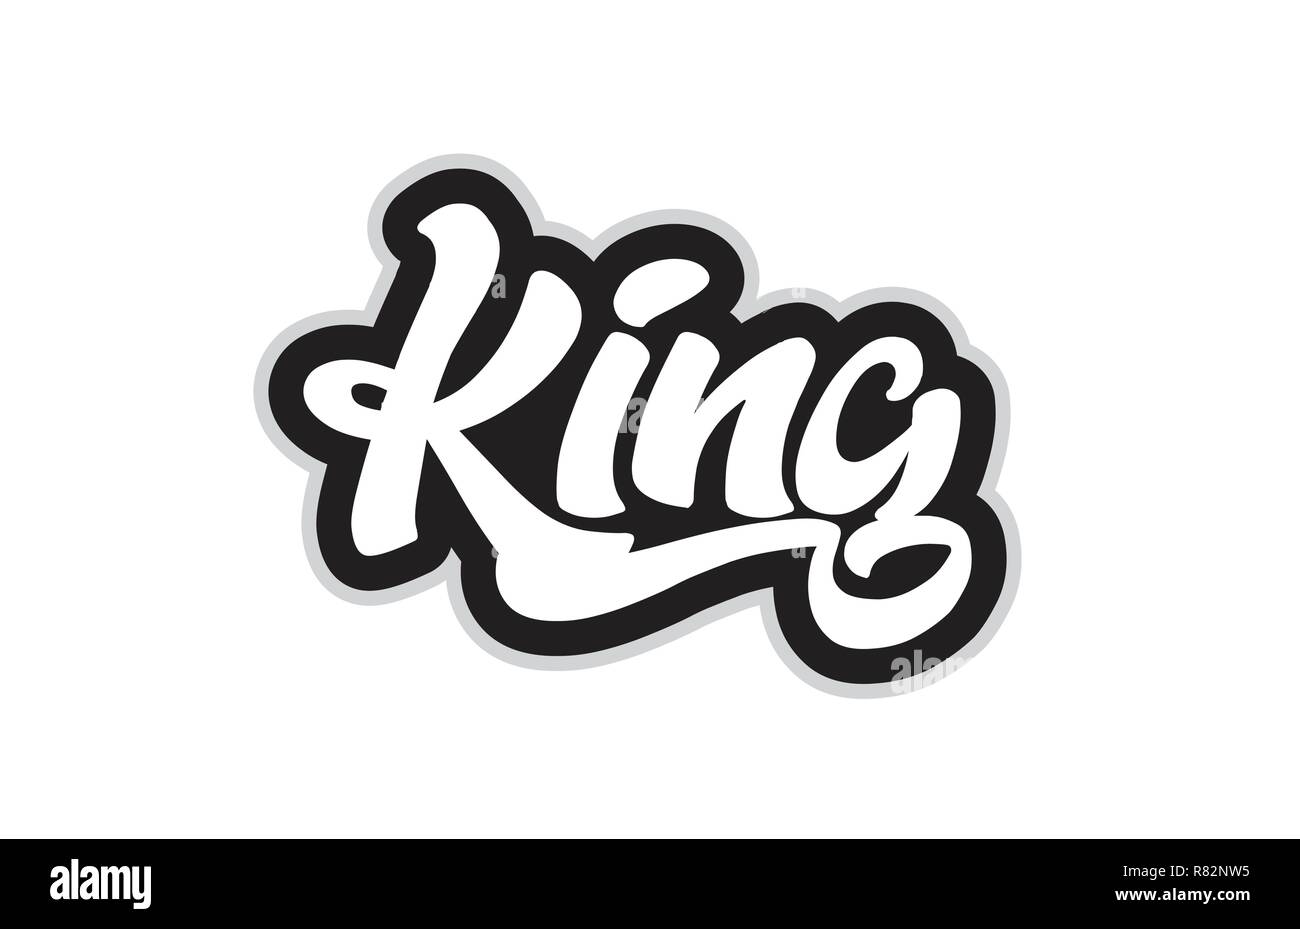 Le roi part écrit un texte pour typographie dessin en noir et blanc. Peut être utilisé pour un logo, image de marque ou de la carte Illustration de Vecteur